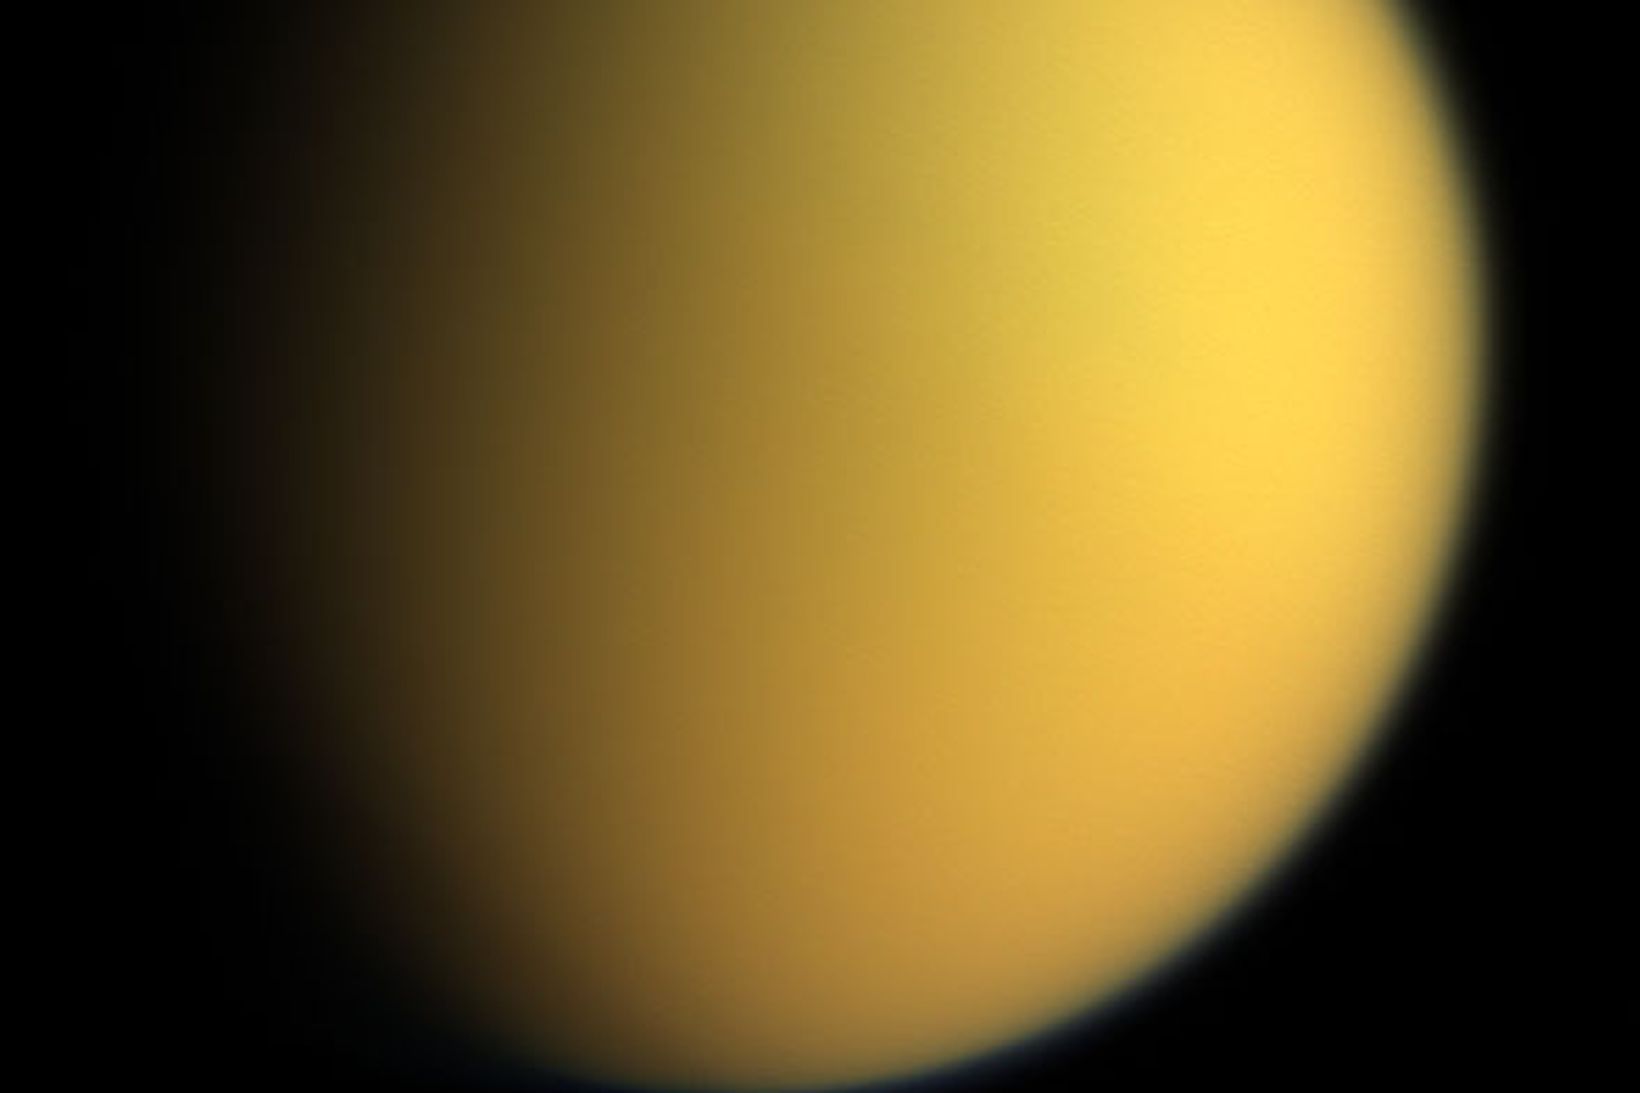 Mynd Cassini af Títan árið 2005. Yfirborð tunglsins sést ekki …